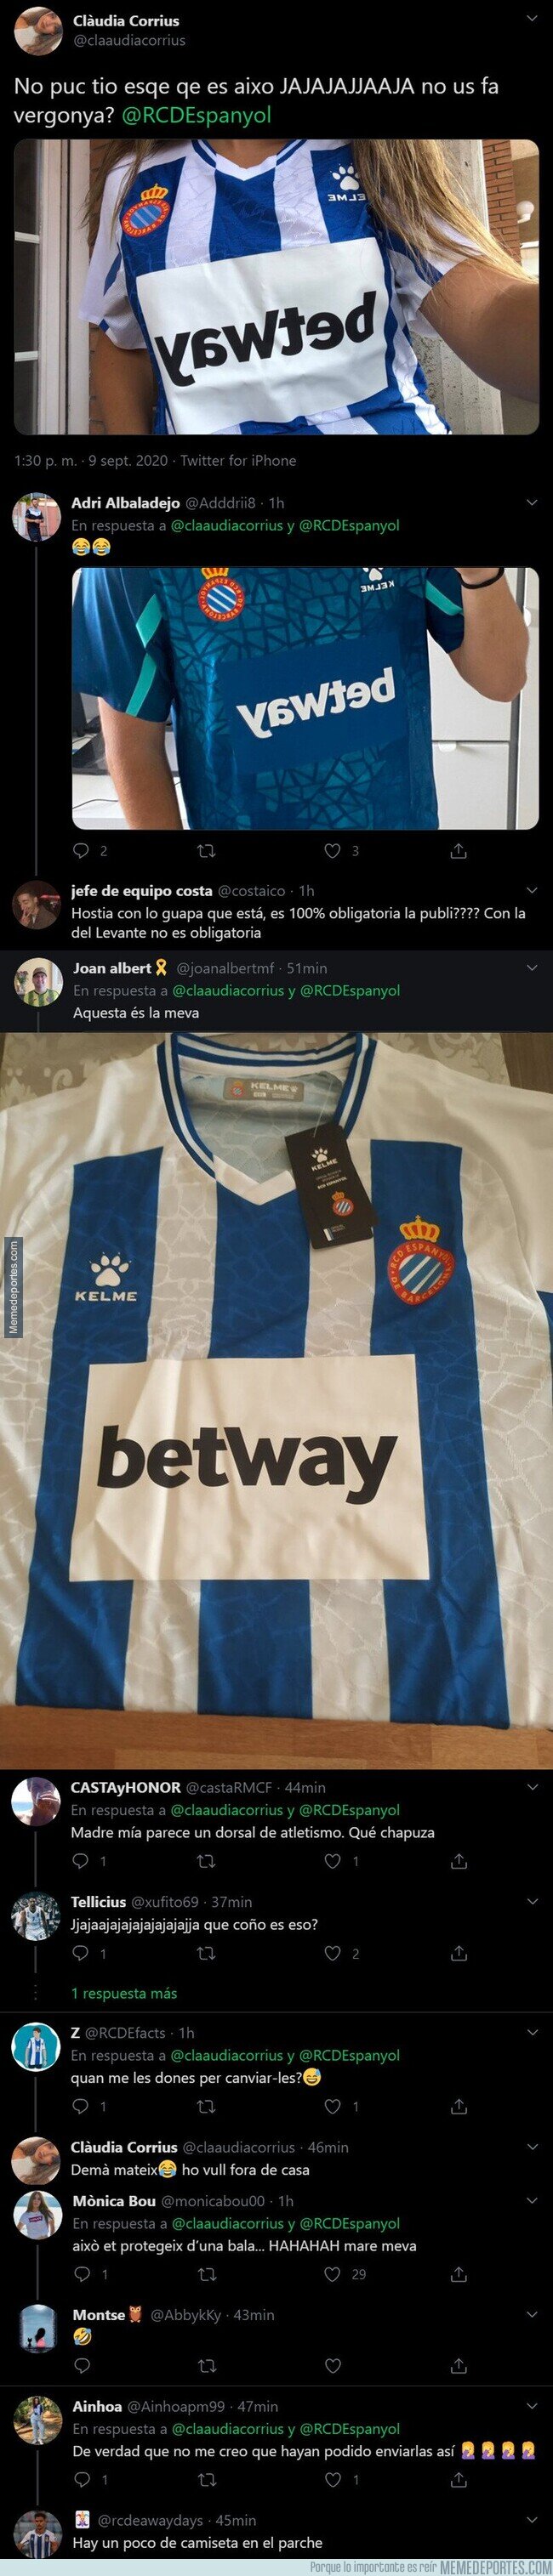 1115380 - Todos los aficionados del Espanyol están indignados por como está llegando la nueva camiseta del Espanyol y la publicidad que tiene